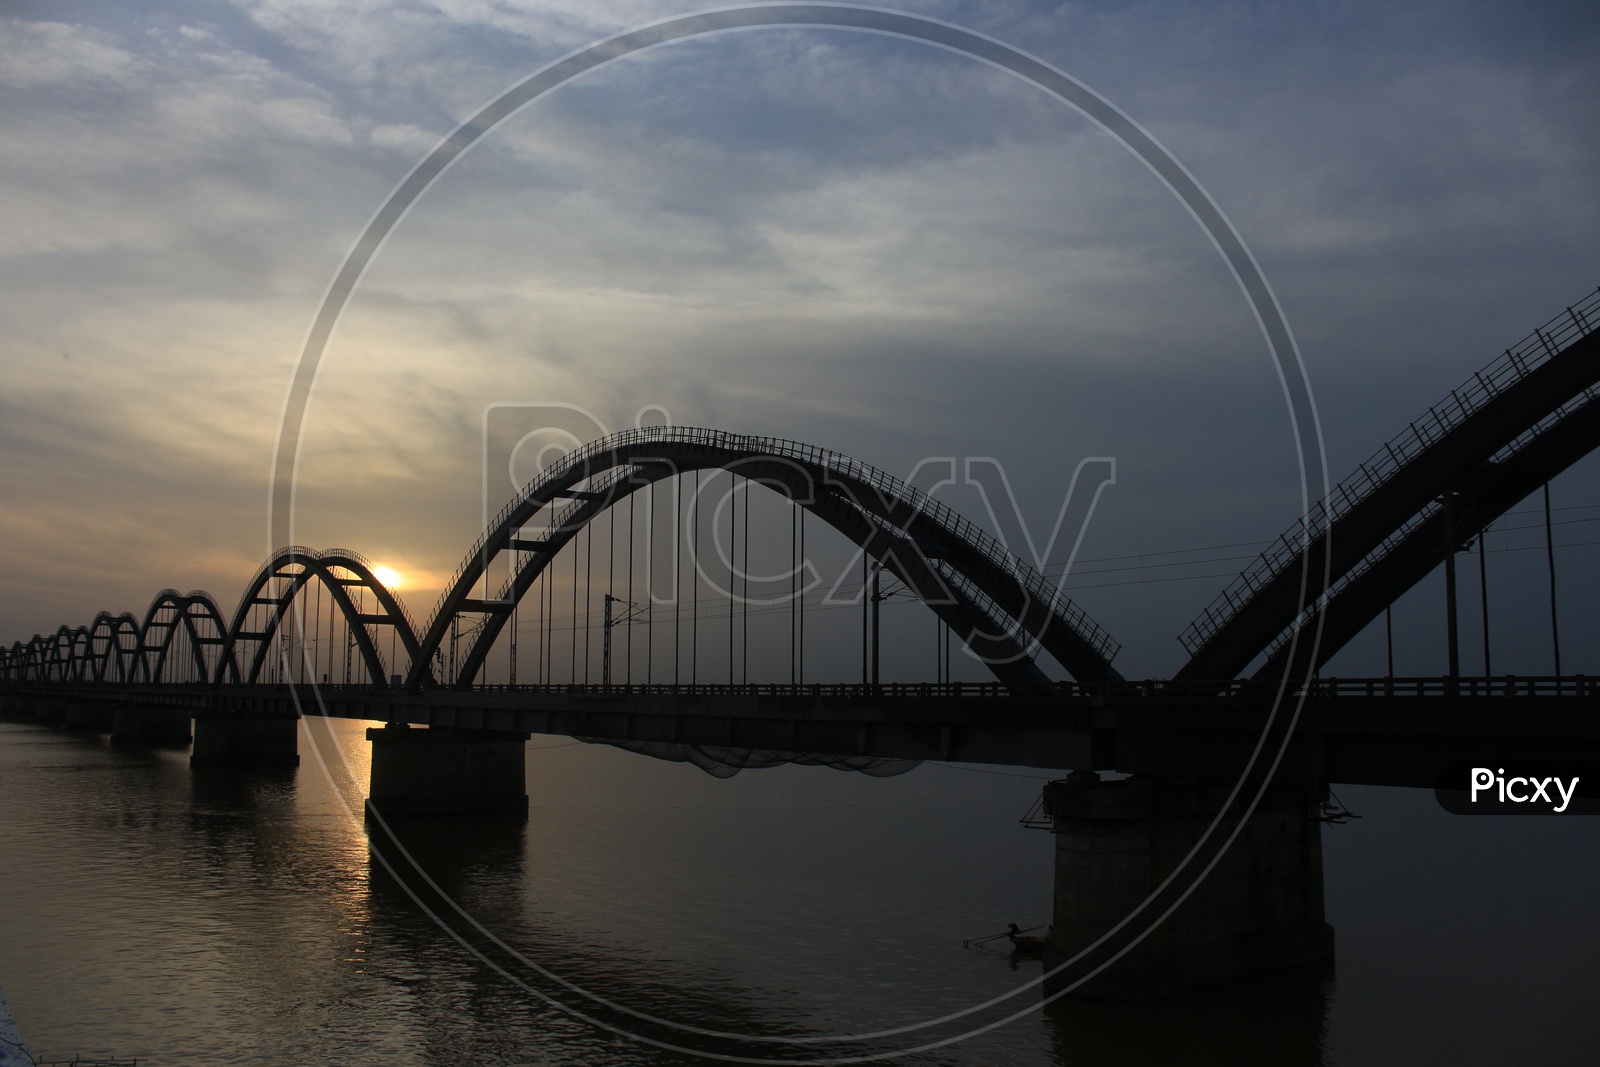 Godavari Arch Bridge